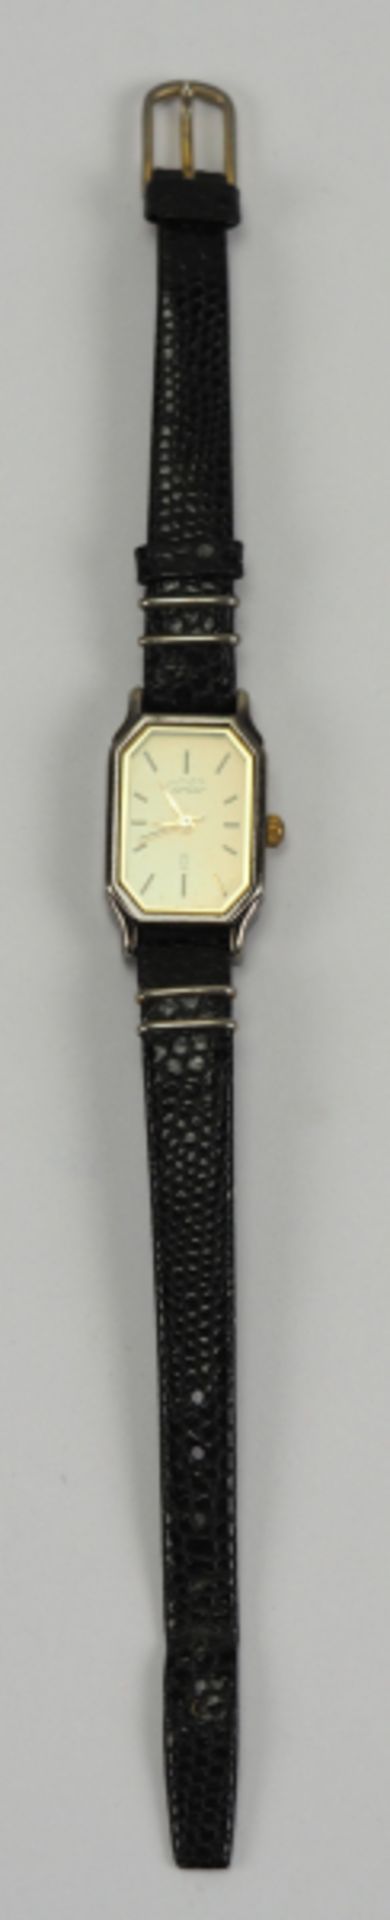 7.5.) UhrenCartier: Damen Armbanduhr.Stahlgehäuse, vergoldetes Zifferblatt must de Cariter, an - Image 6 of 7